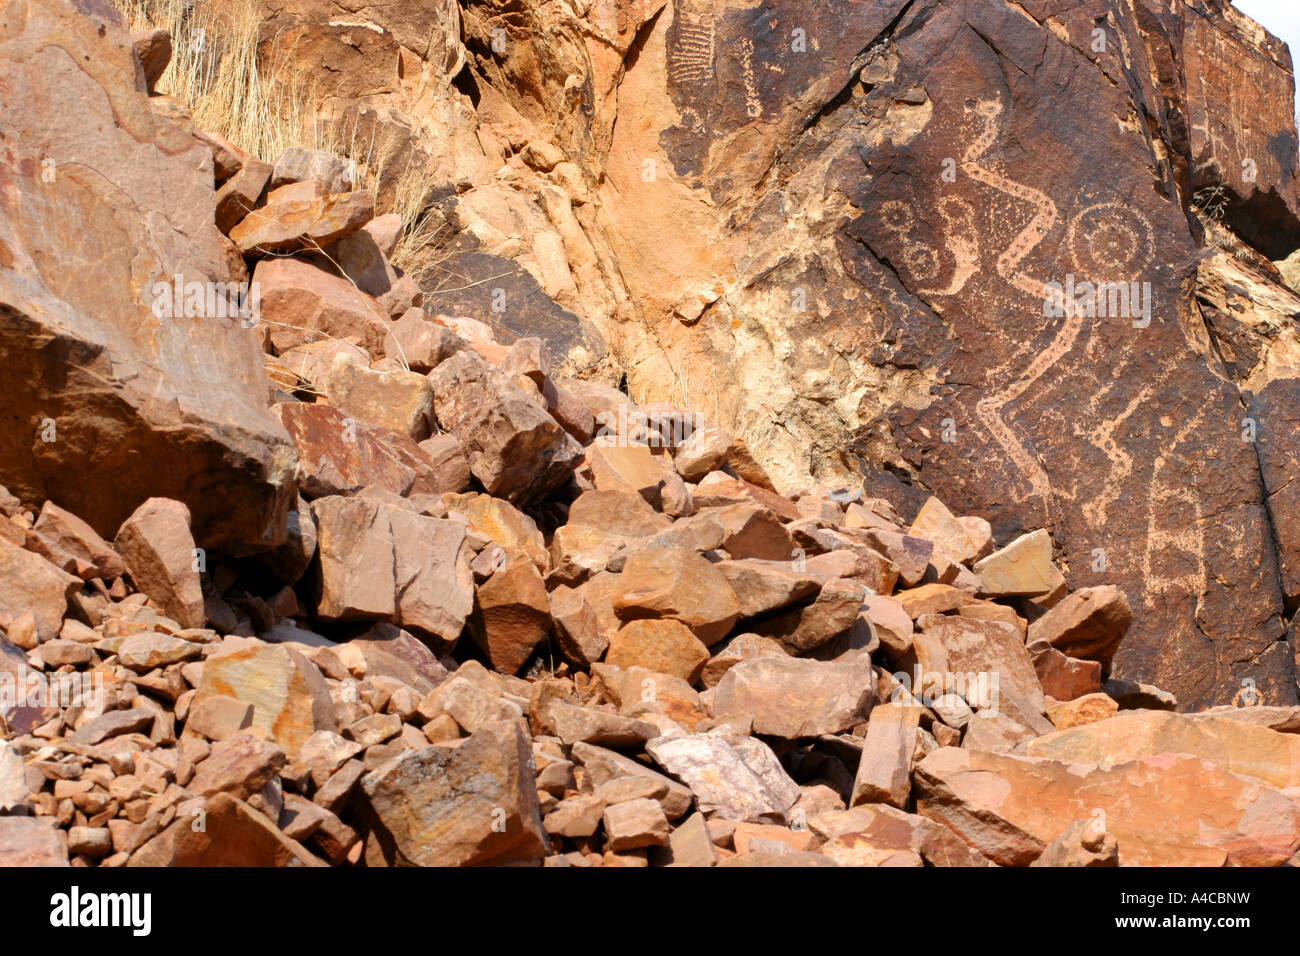 Parowan gap pétroglyphes, Utah Banque D'Images